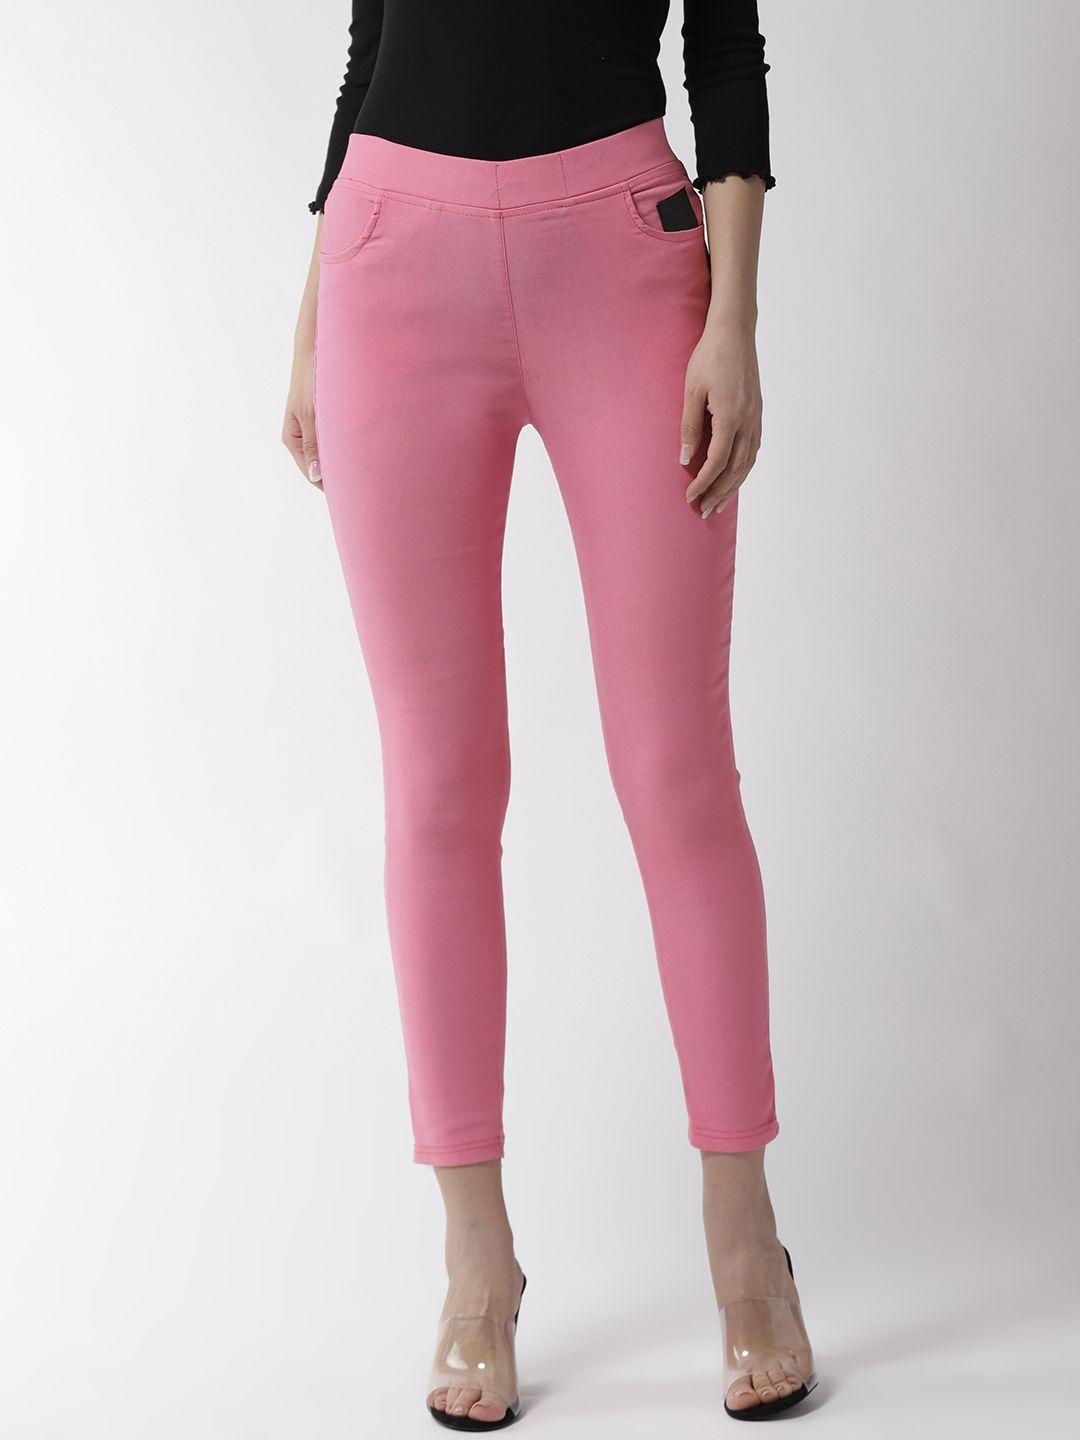 la-zoire-women-pink-solid-slim-fit-cropped-jeggings